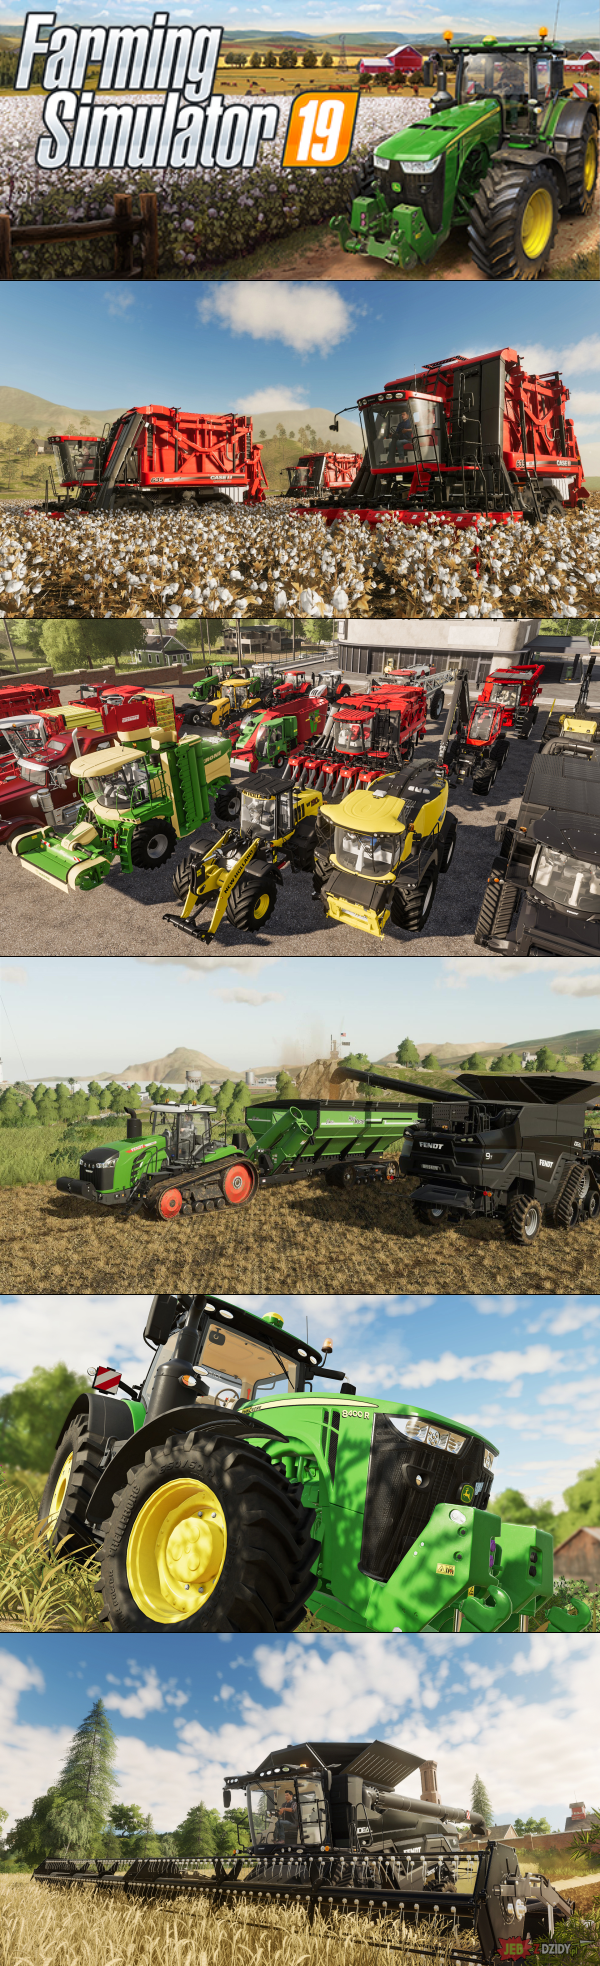 Farming Simulator 19 za darmo w epic games store